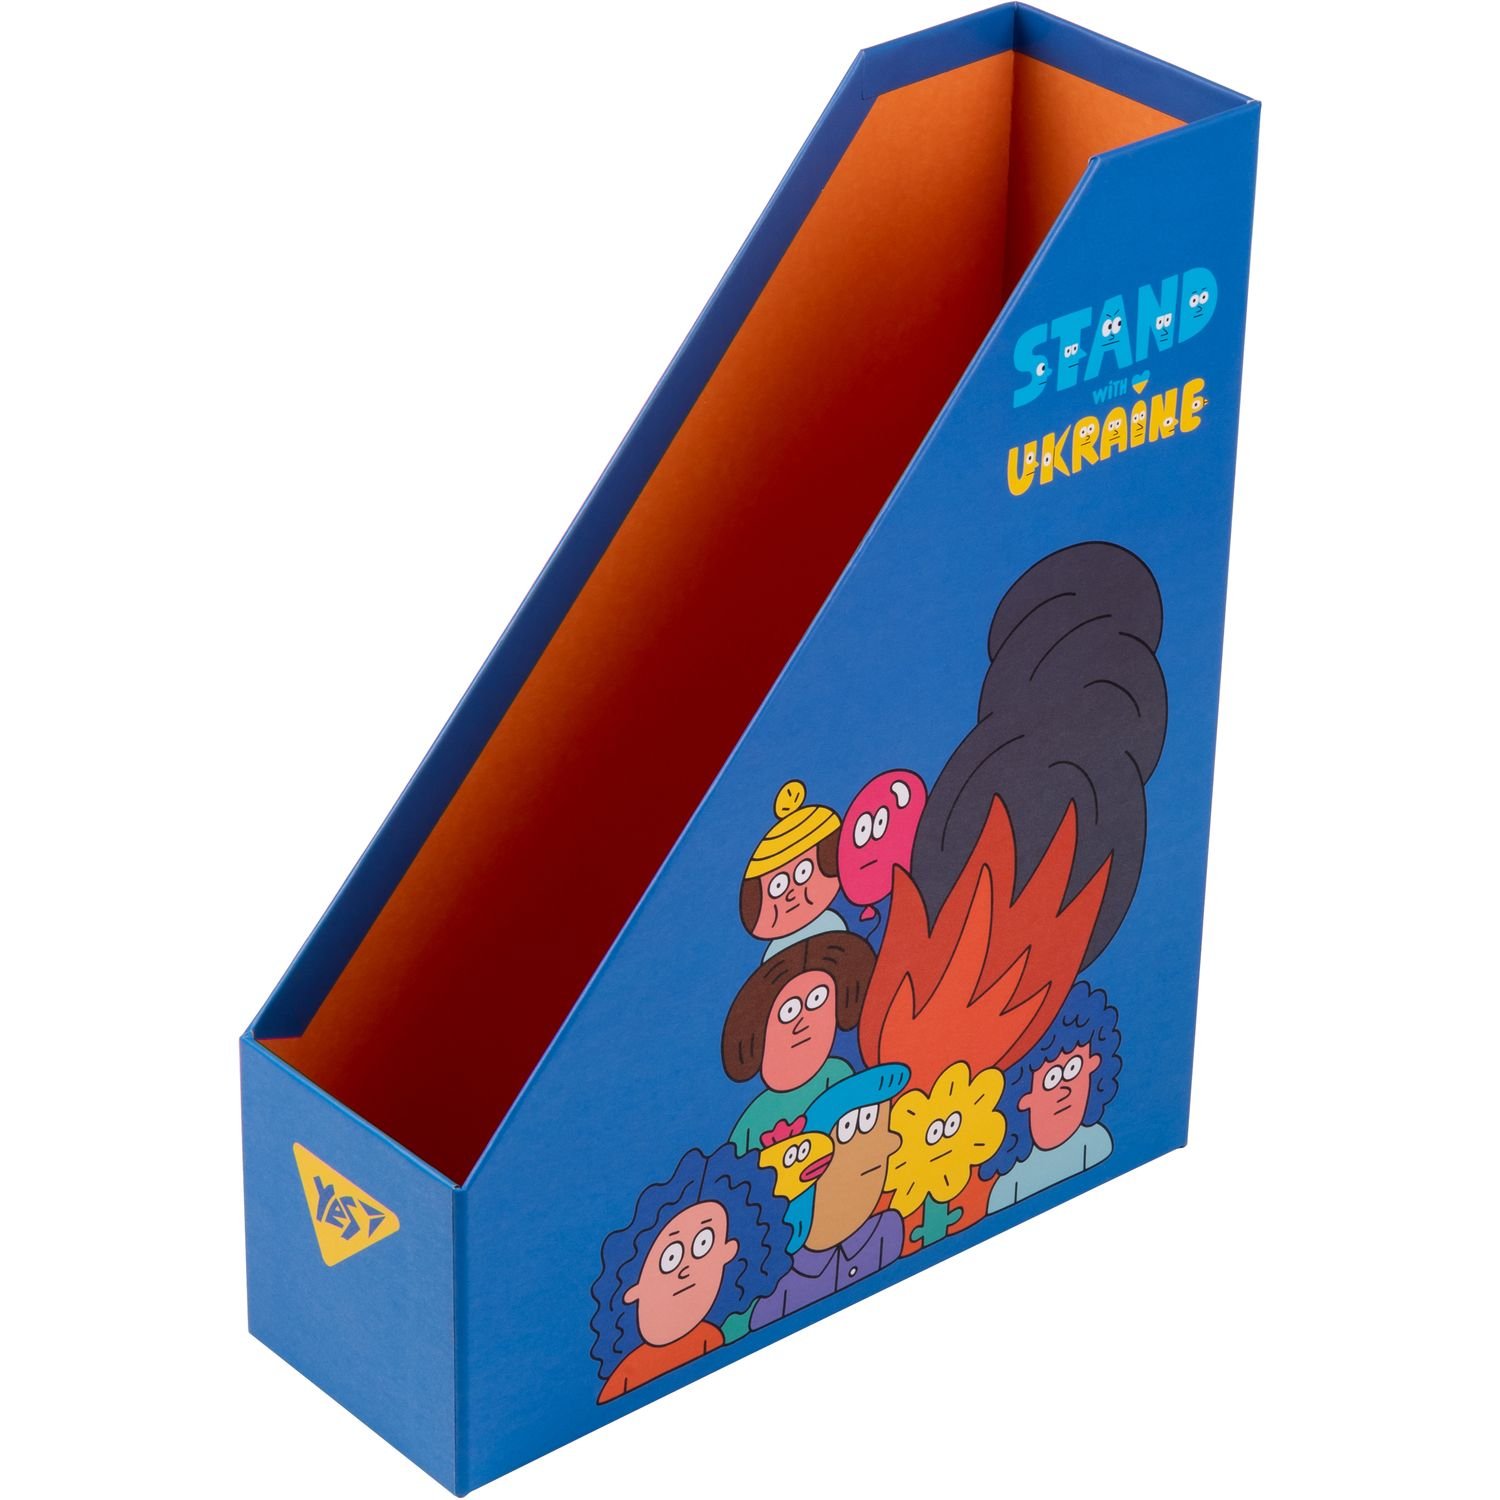 Настільний органайзер у наборі Yes Stand with Ukraine, картон, 4 предмети, різнобарвний (450130) - фото 5